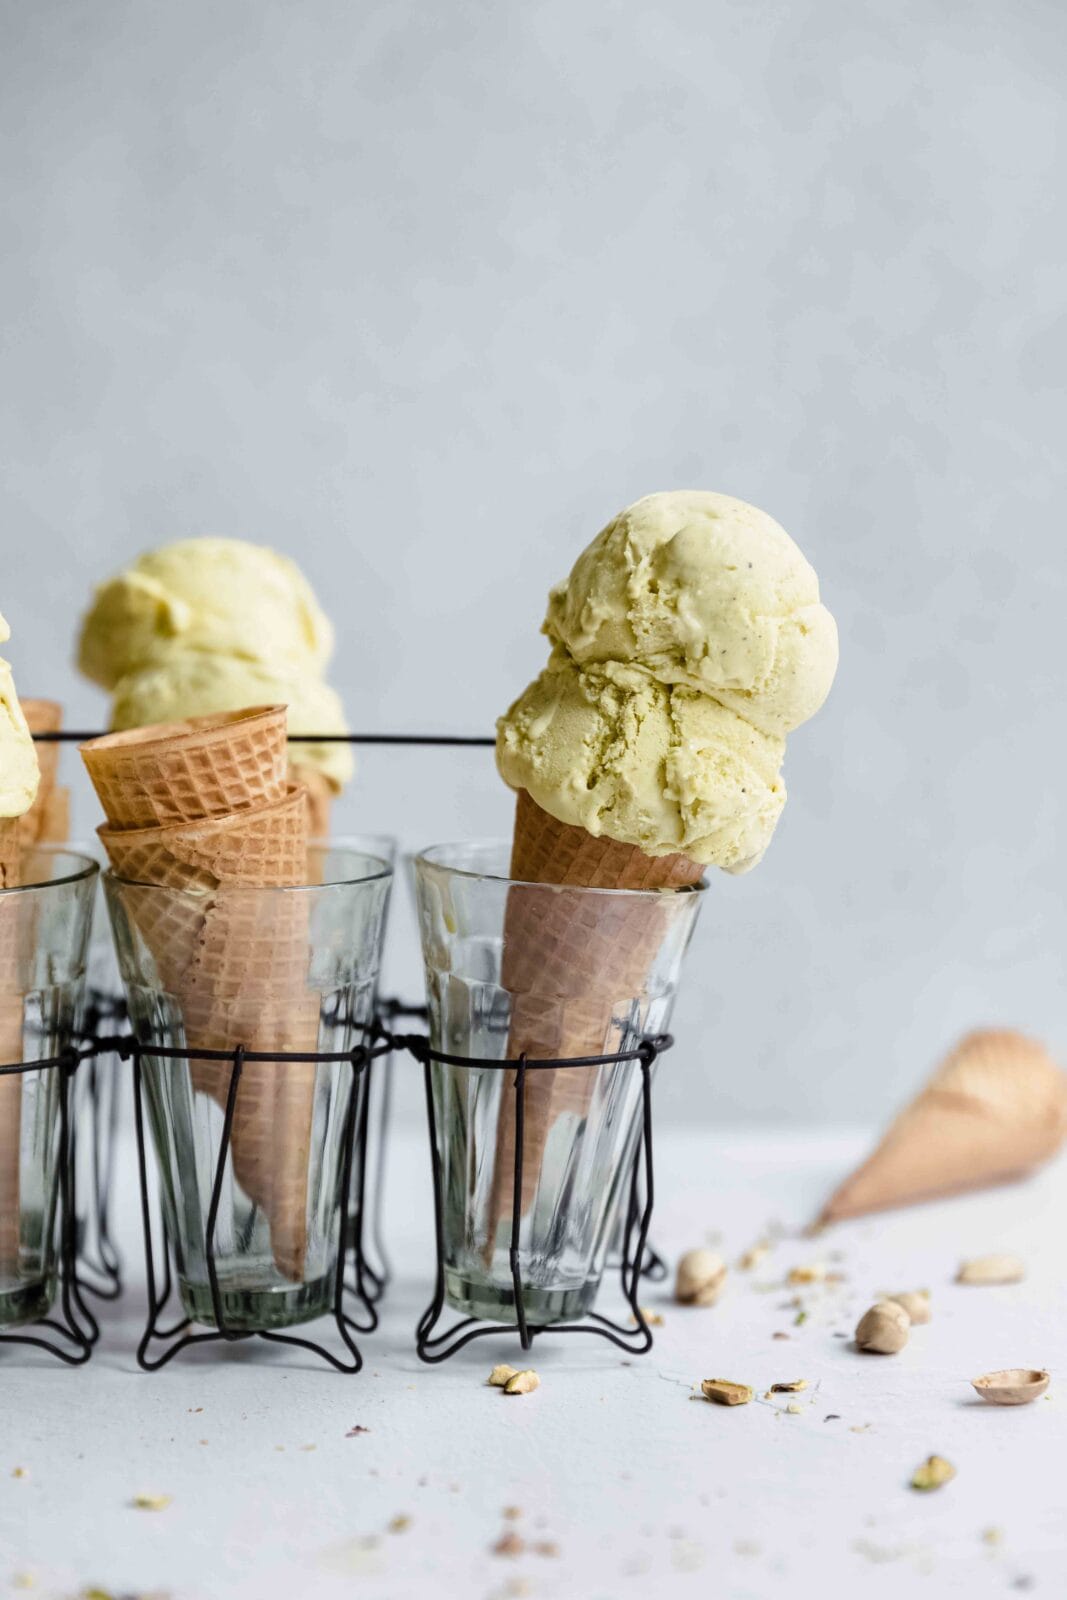 pistachio ice cream in sugar cones